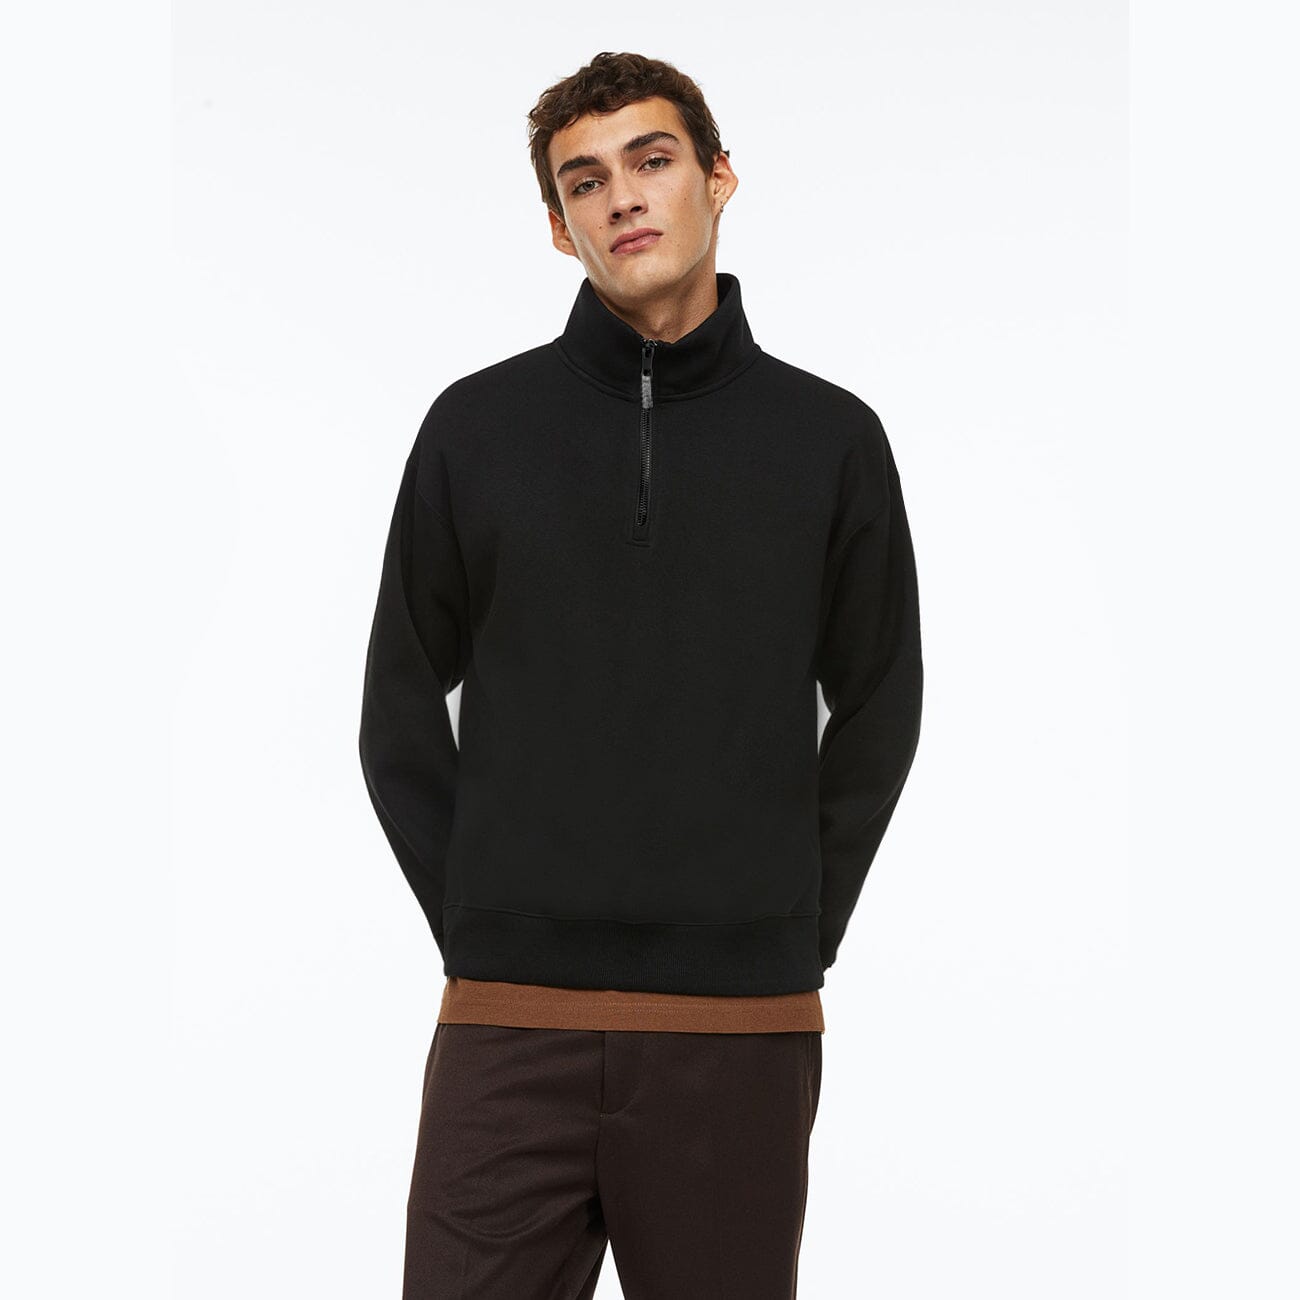 Premium Quality Black Mock Neck Half Zipper Fleece Sweatshirt For Men (120262)